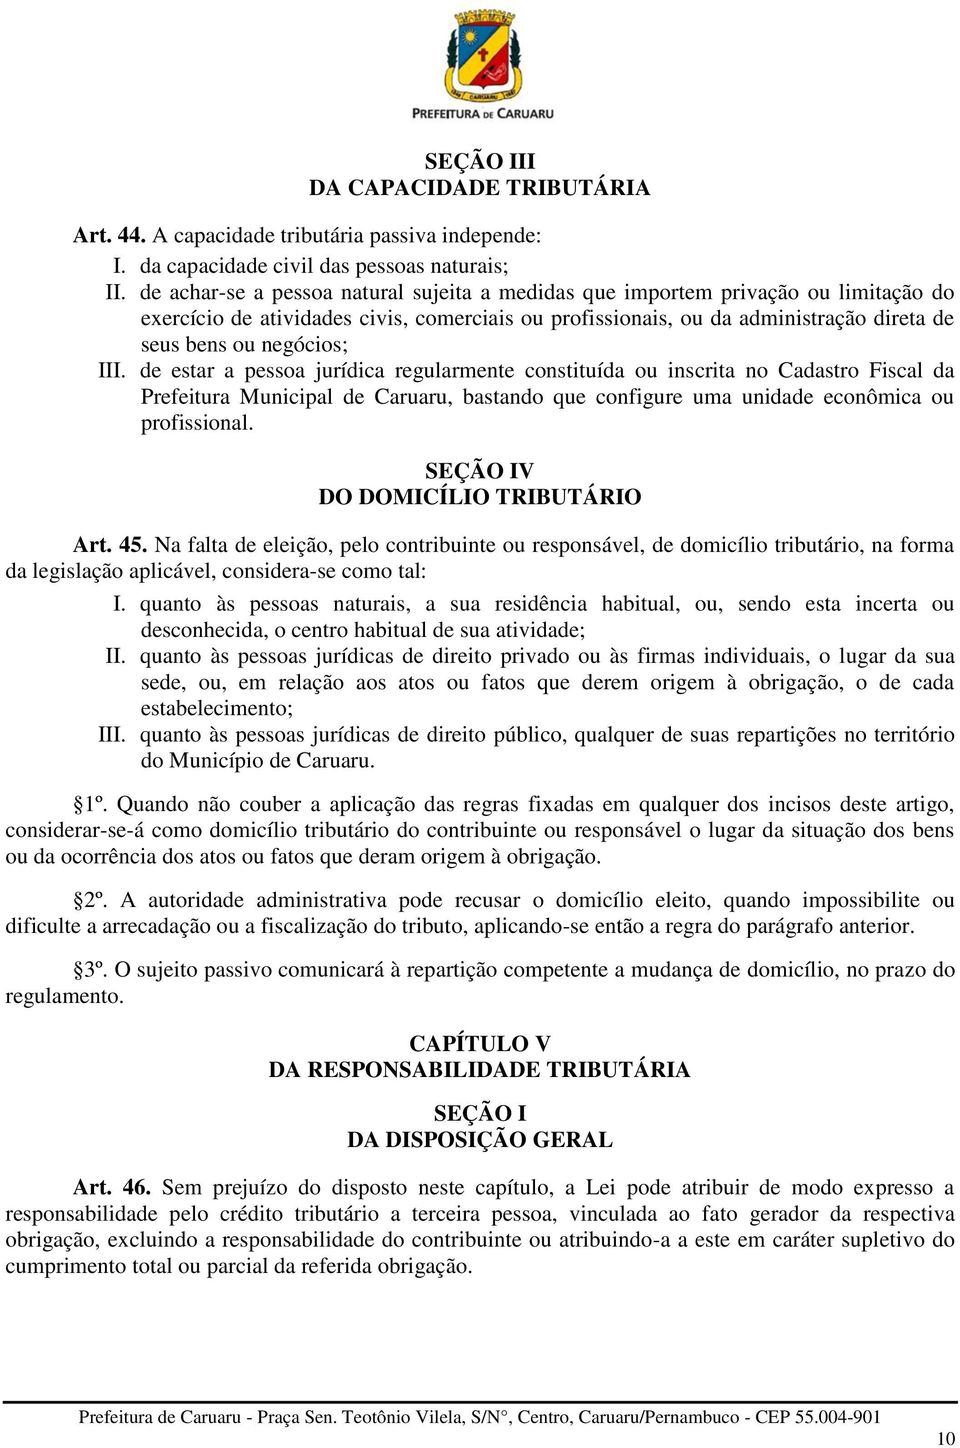 III. de estar a pessoa jurídica regularmente constituída ou inscrita no Cadastro Fiscal da Prefeitura Municipal de Caruaru, bastando que configure uma unidade econômica ou profissional.